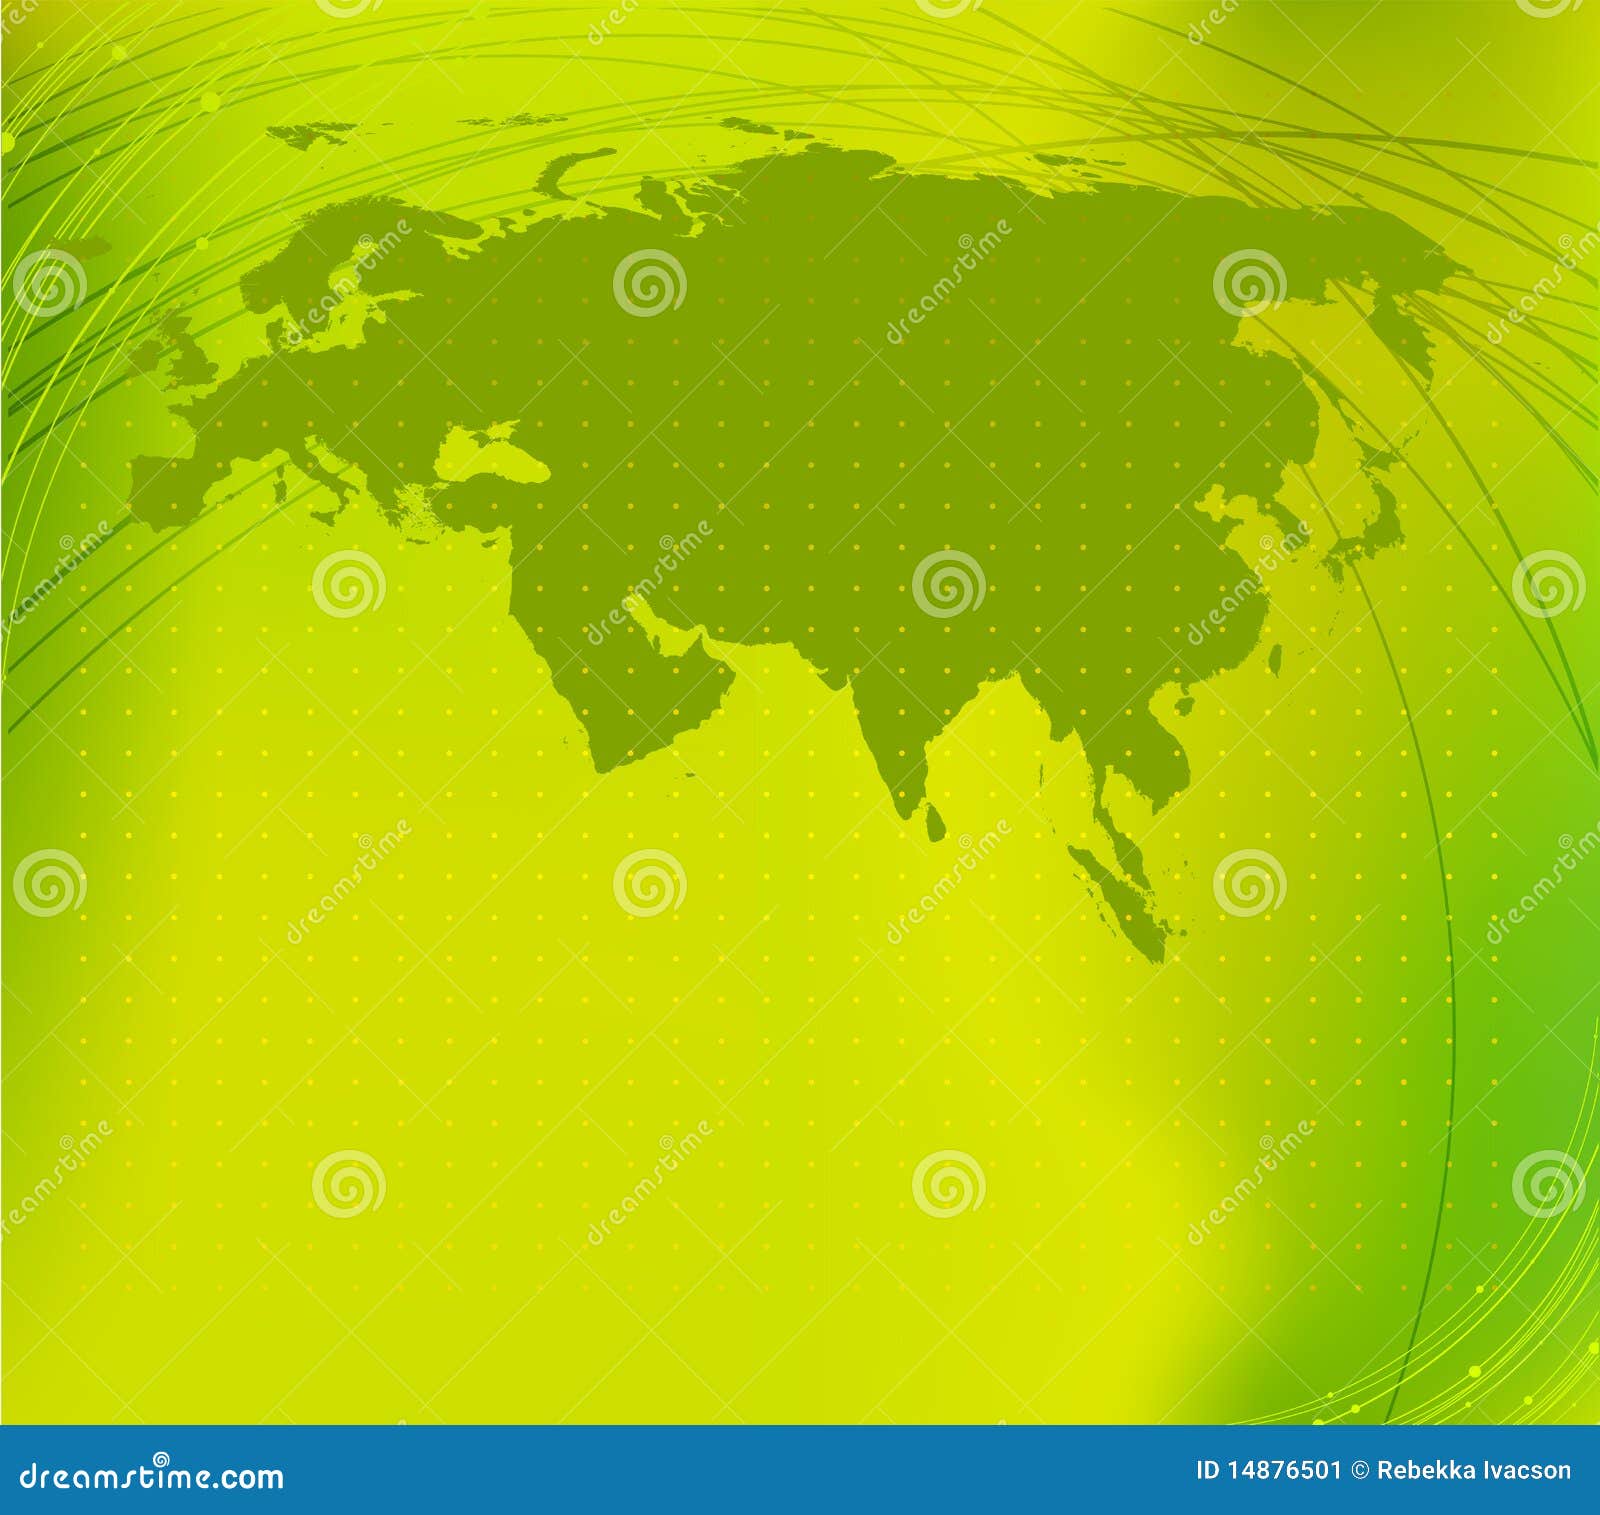 eurasia map silhouette